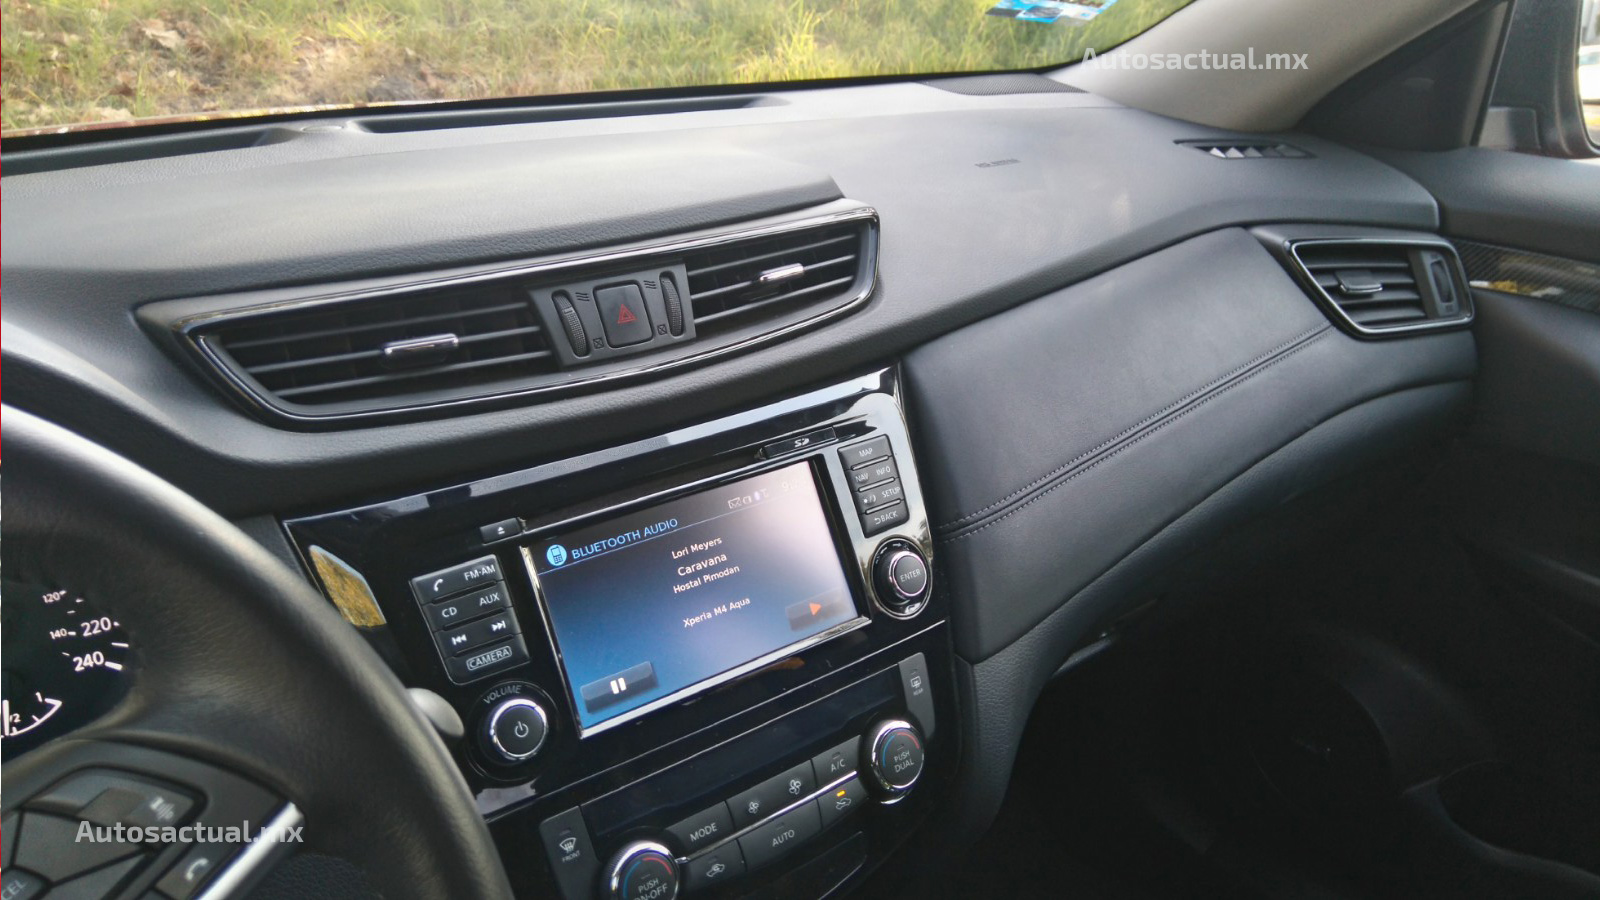 Nissan X-Trail 2018 en prueba y análisis - interior, pantalla touch con comandos por voz